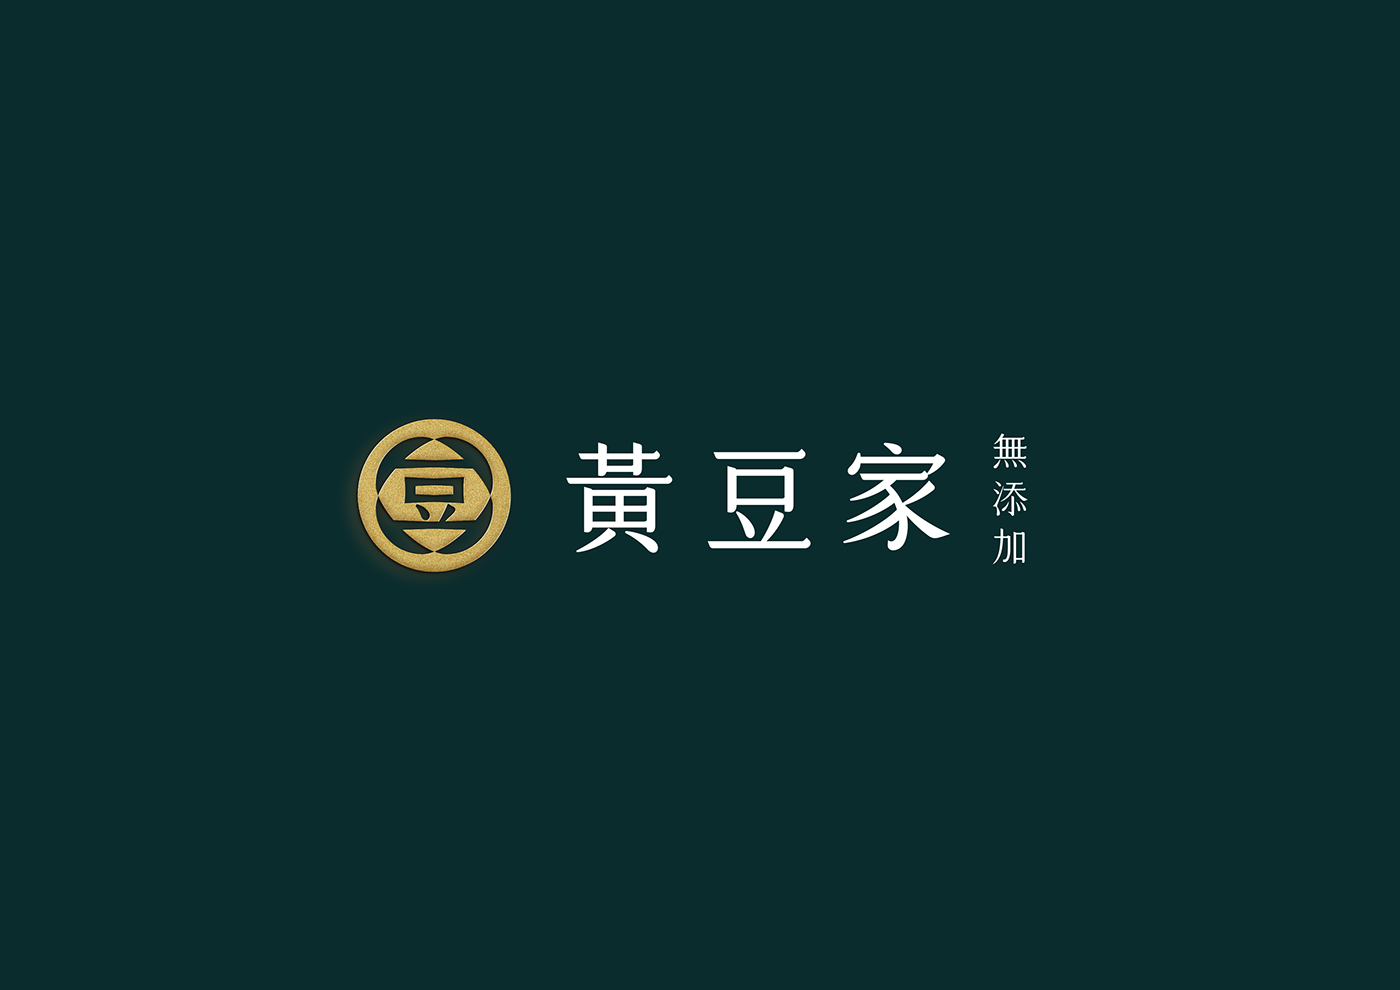 Logotype logo mark CI soymilk soy restaurant font branding 